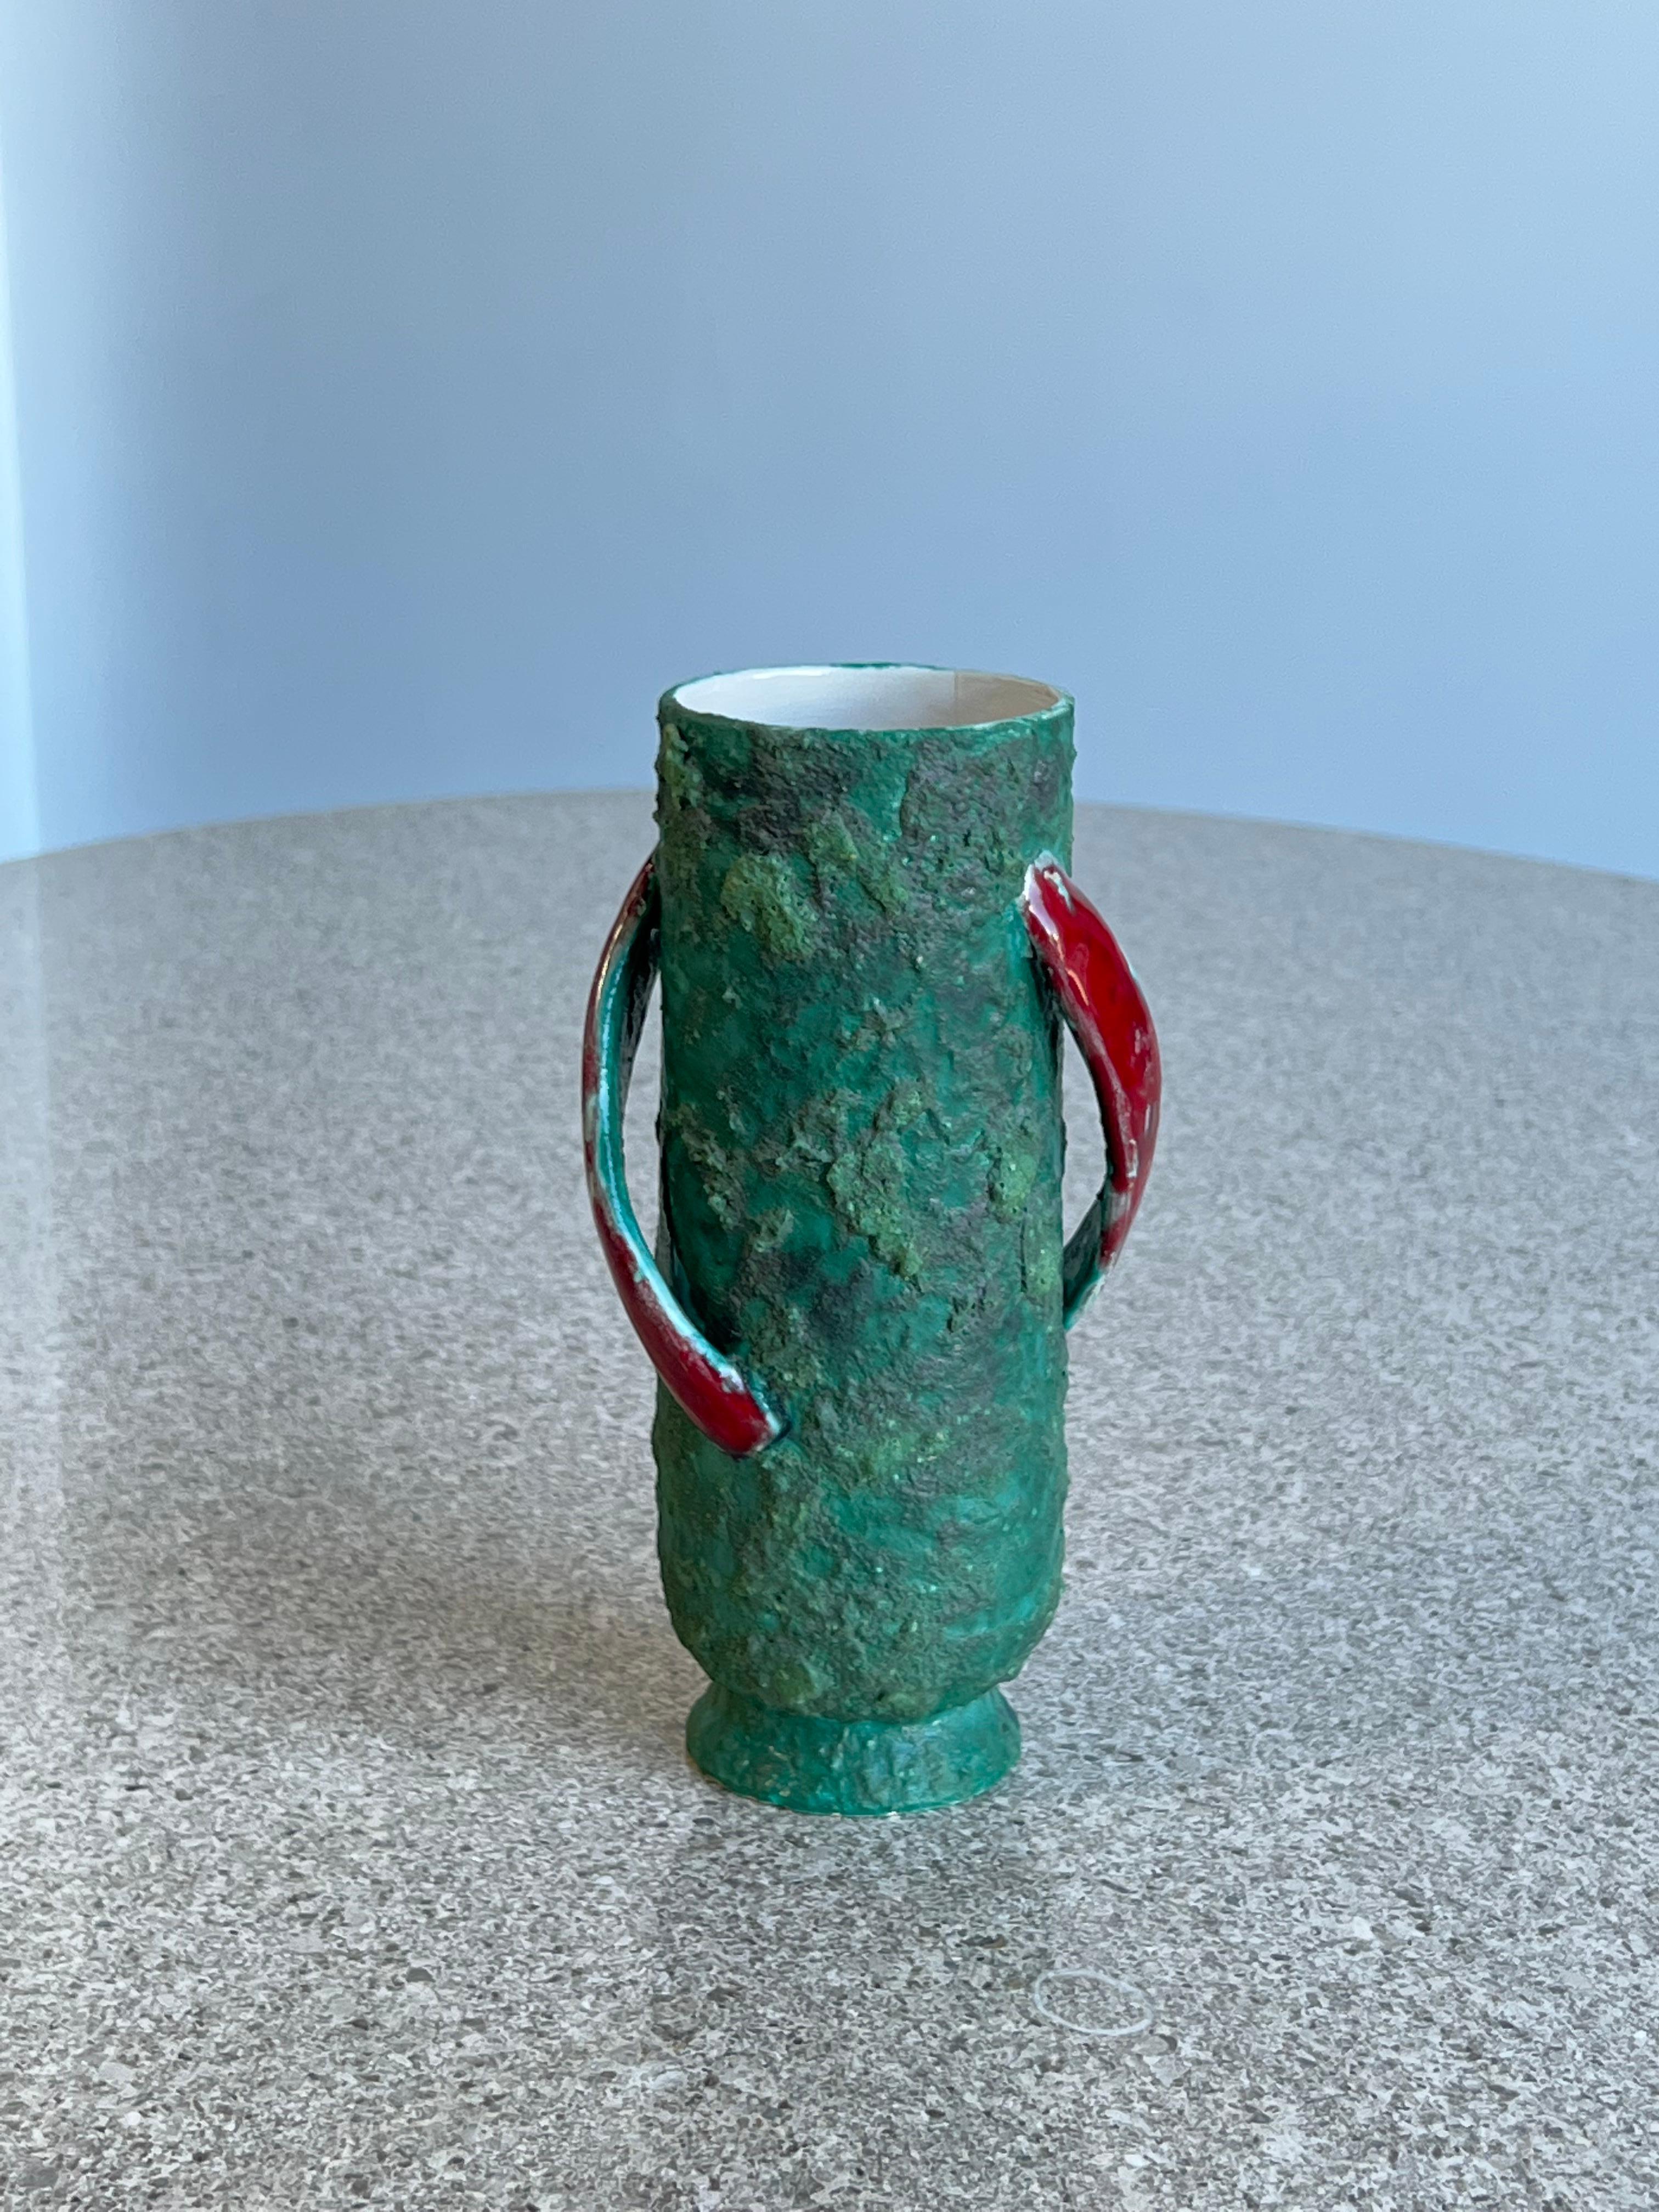 Kunst Lava atemberaubende Vase 1960 Italien.
Schöne aquagrüne Farbe und rot glasierte Keramikgriffe. 
Perfektes Mittelstück für einen Esstisch oder eine Anrichte.
